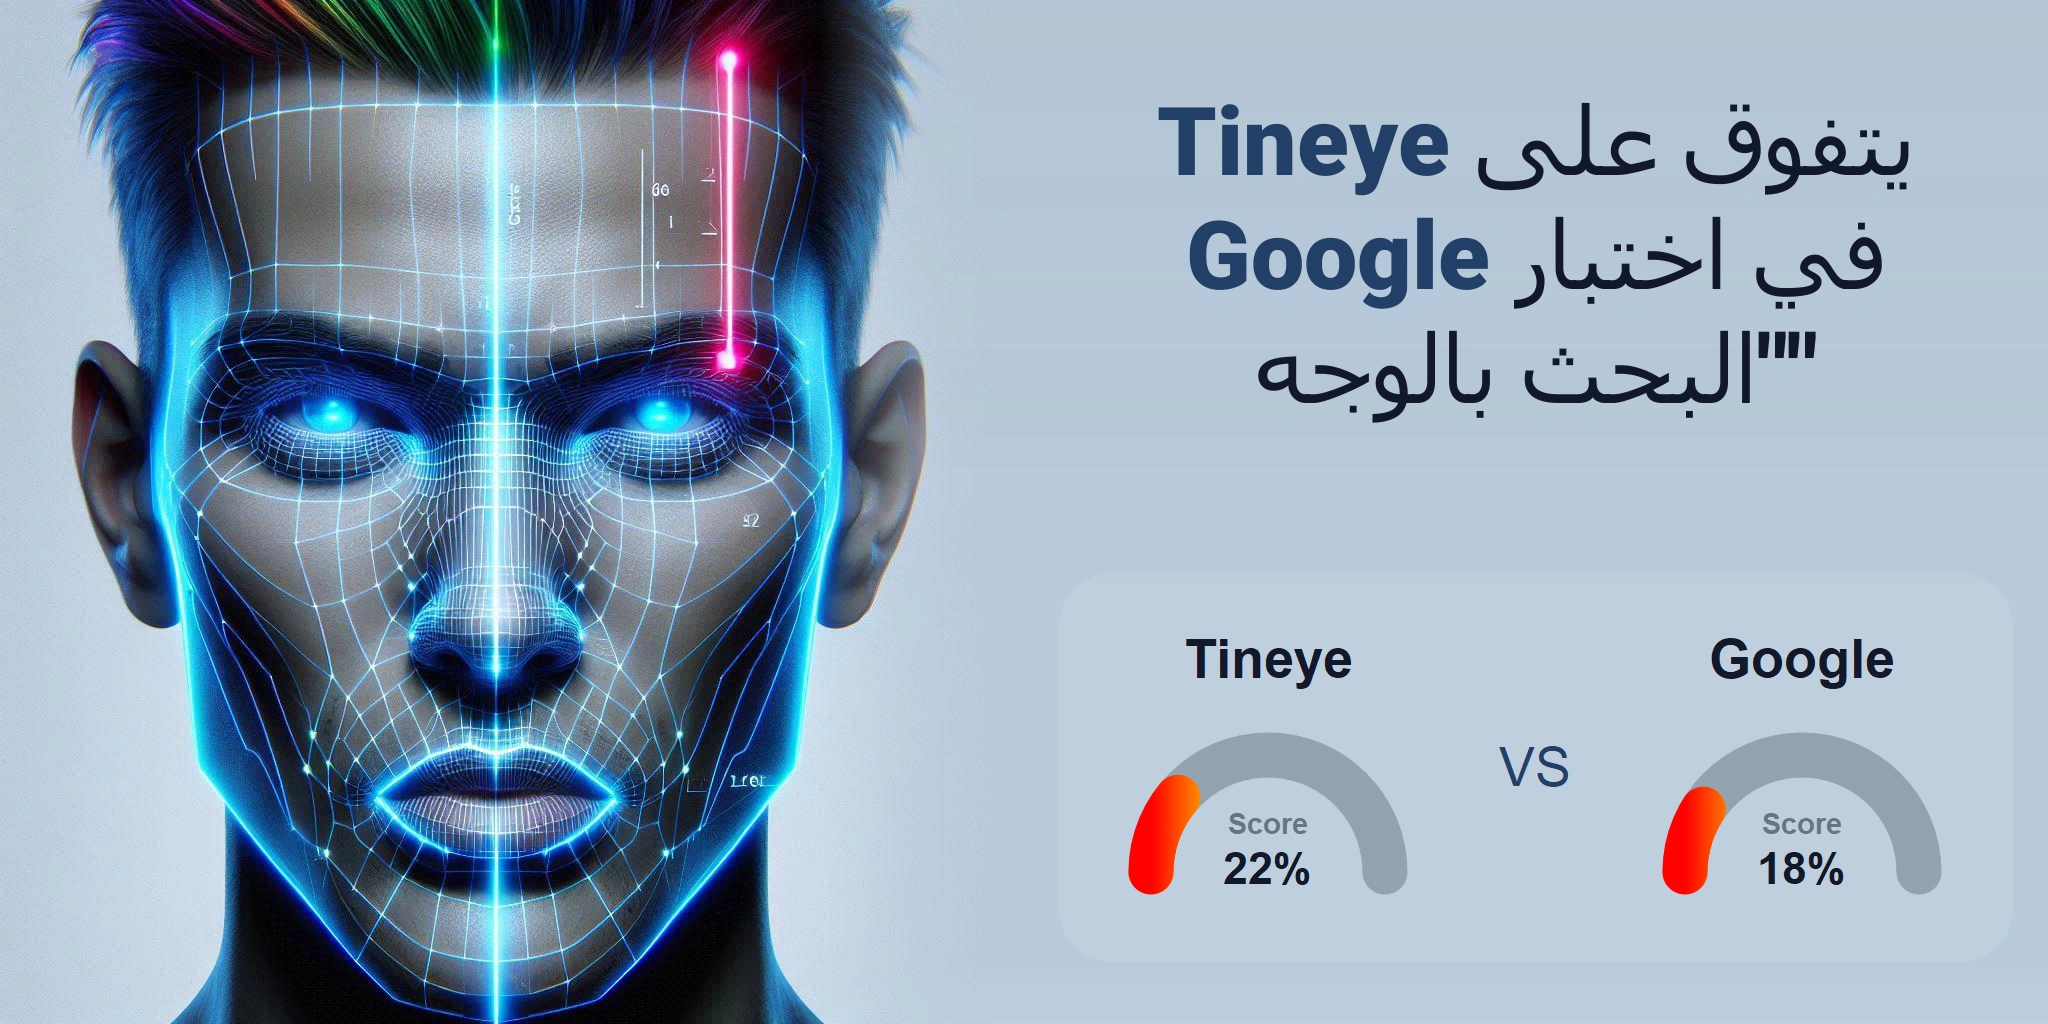 ما هو الأفضل للبحث بالوجه: <br>Google أو Tineye؟